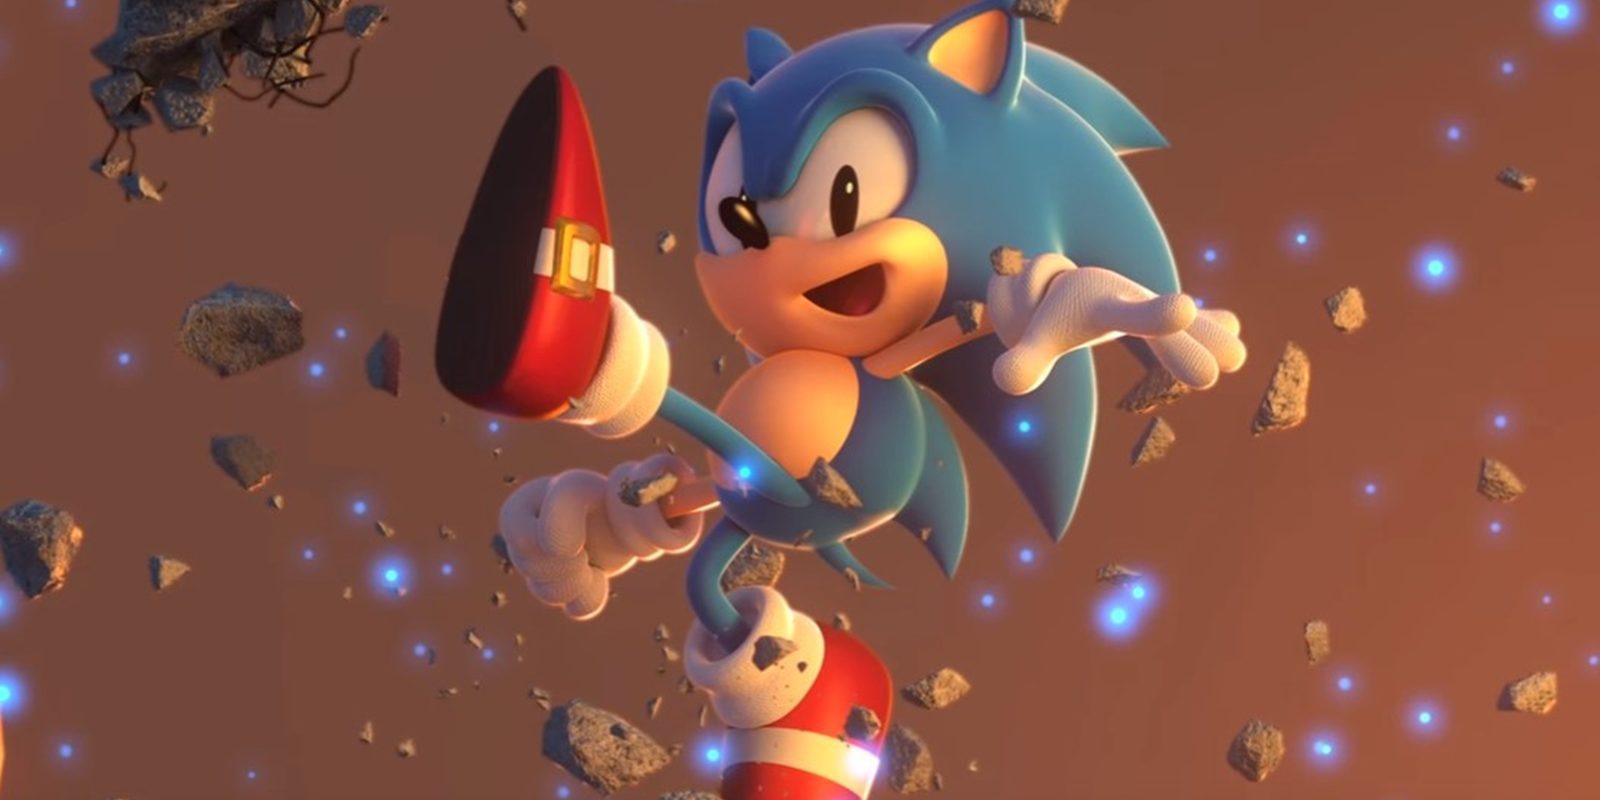 Pues a mí los dos nuevos proyectos de Sonic me tienen loco - Opinión